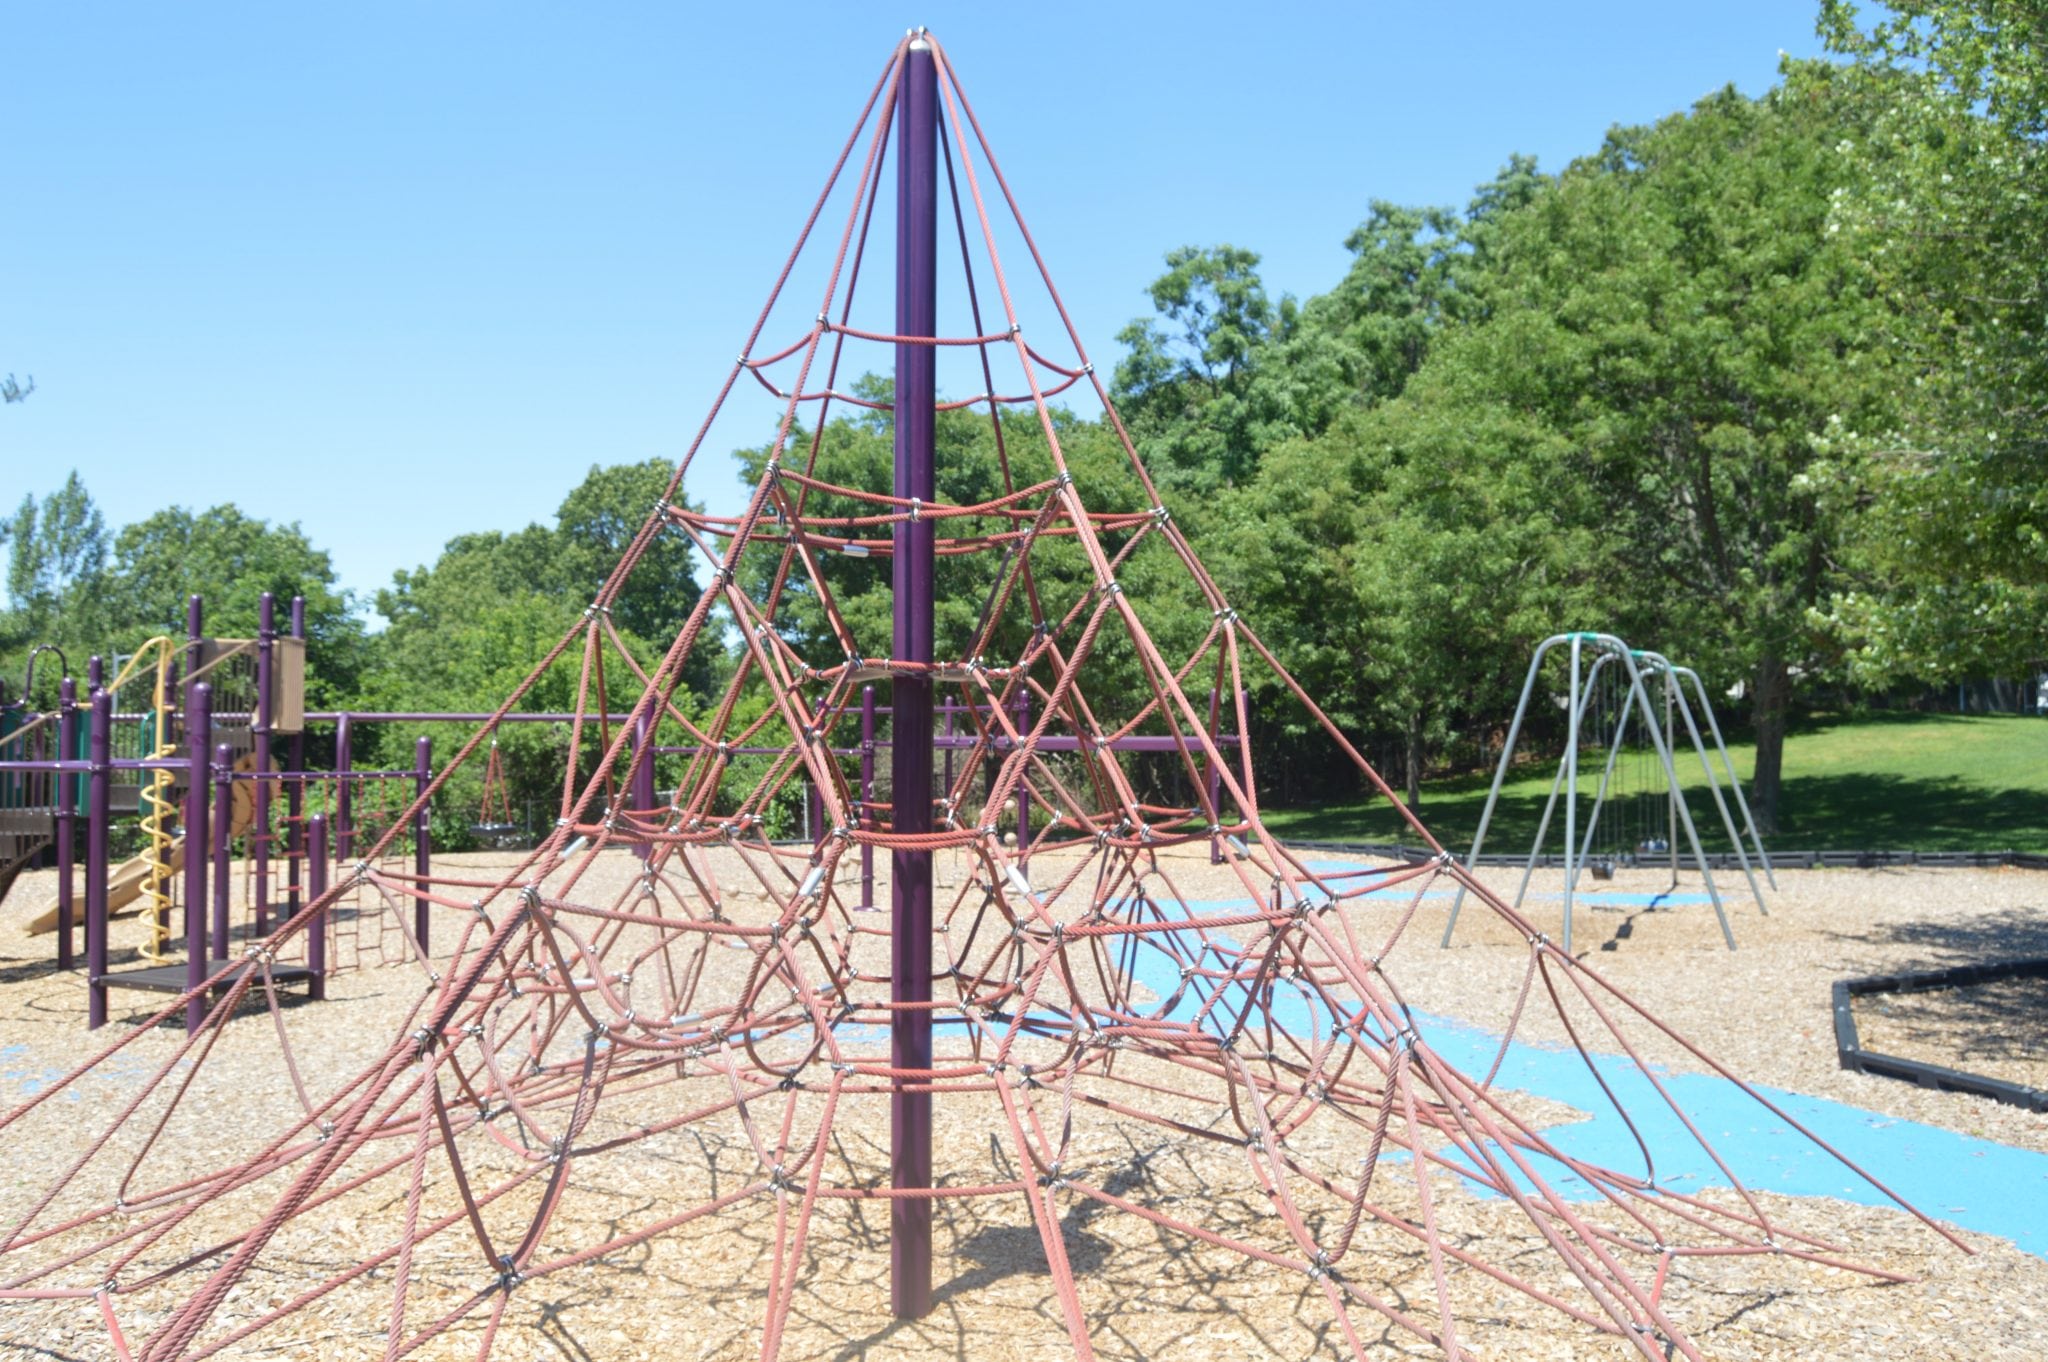 Fiske Elementary school playground, Wellesley